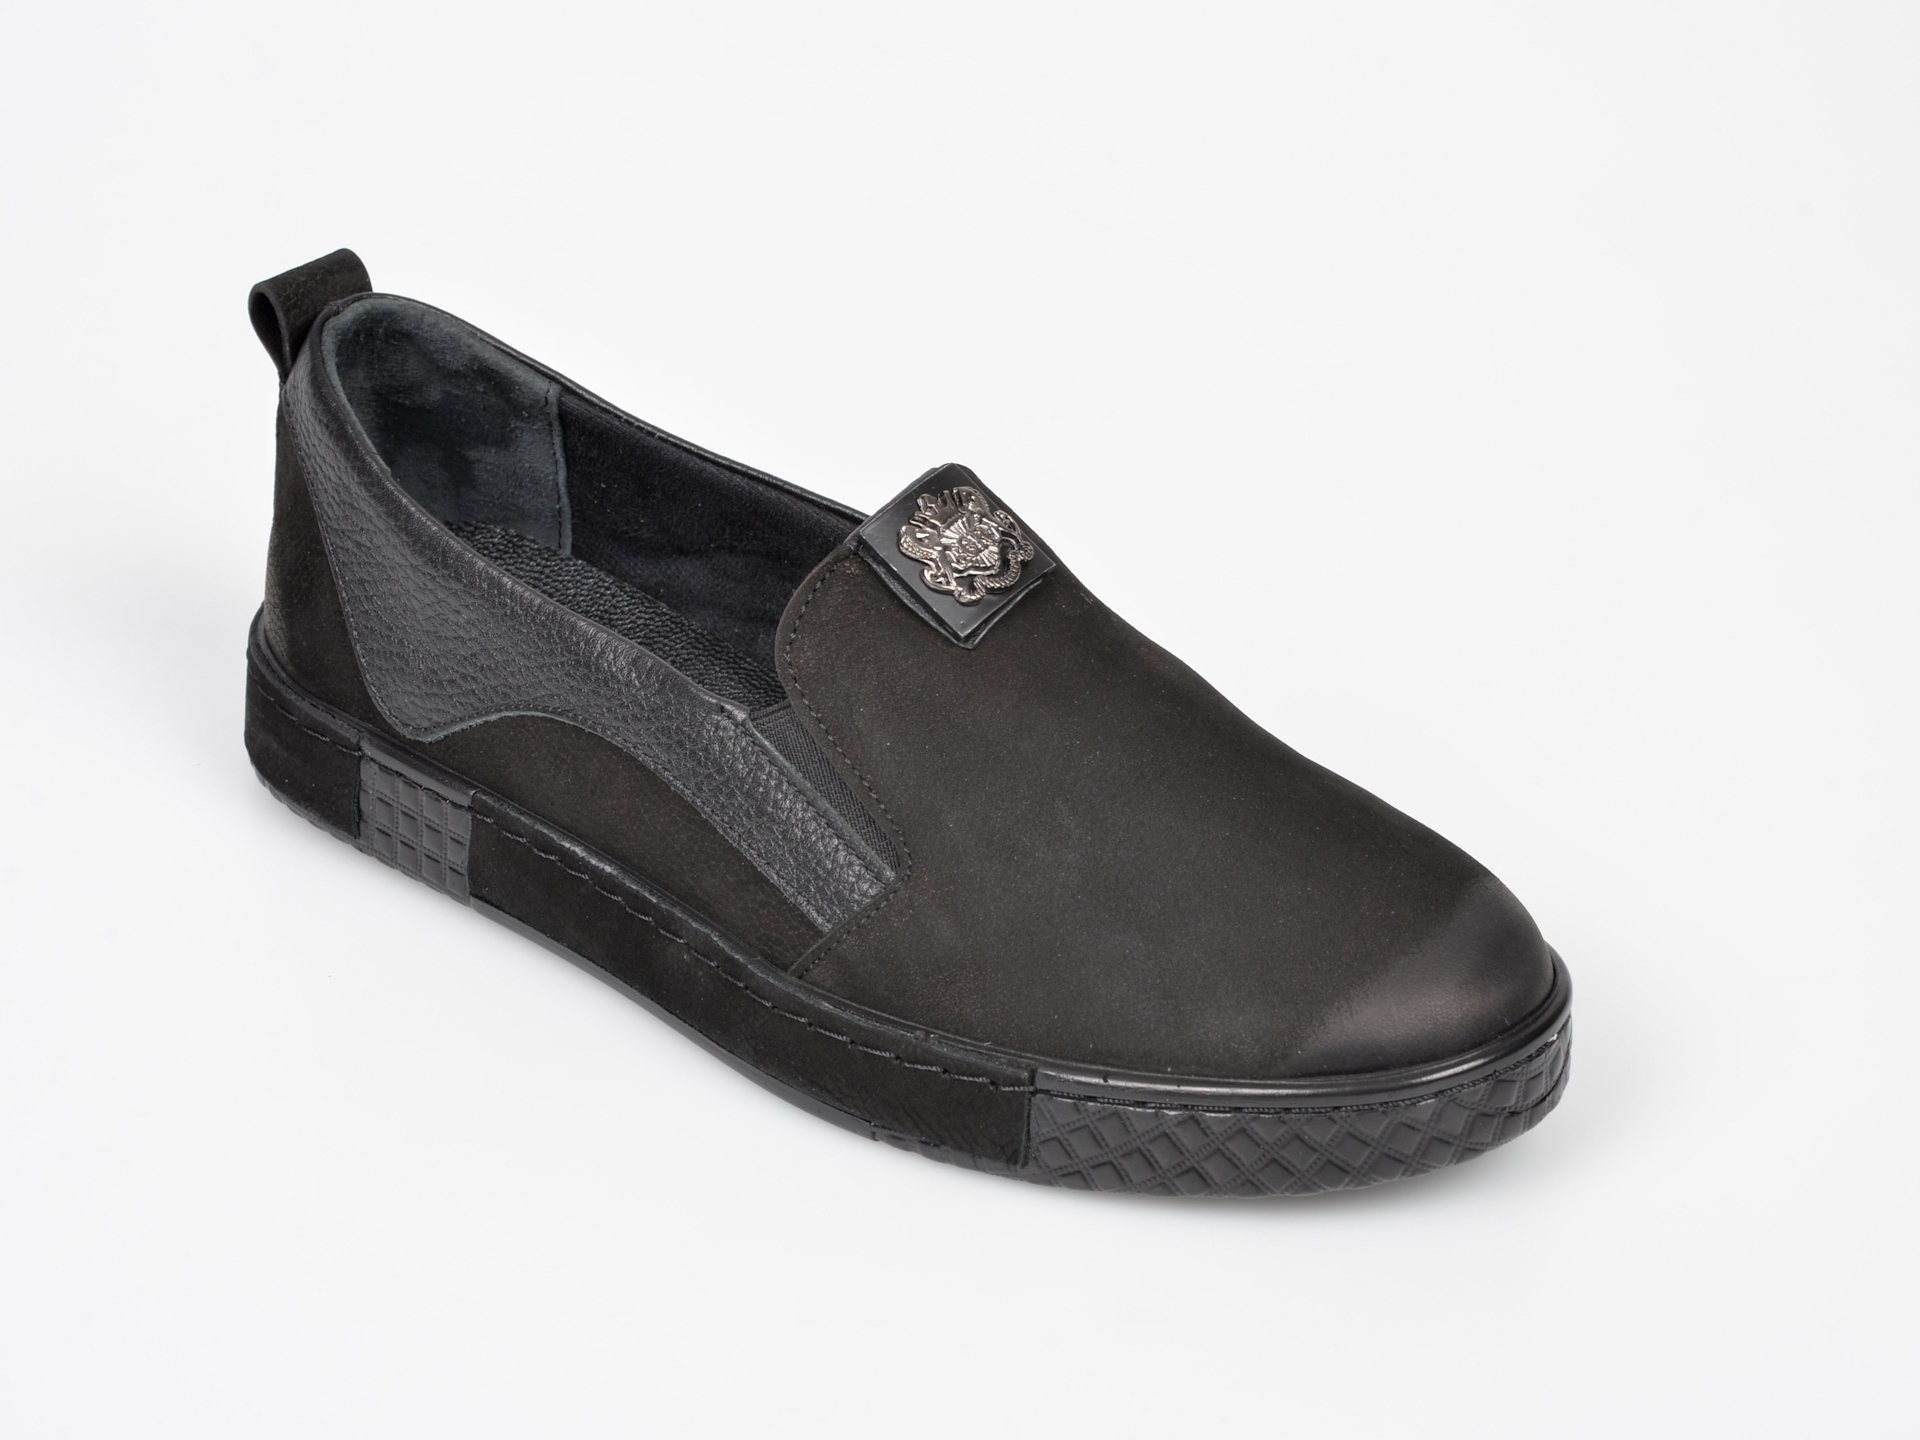 Pantofi FLAVIA PASSINI negri, EM4713, din nabuc